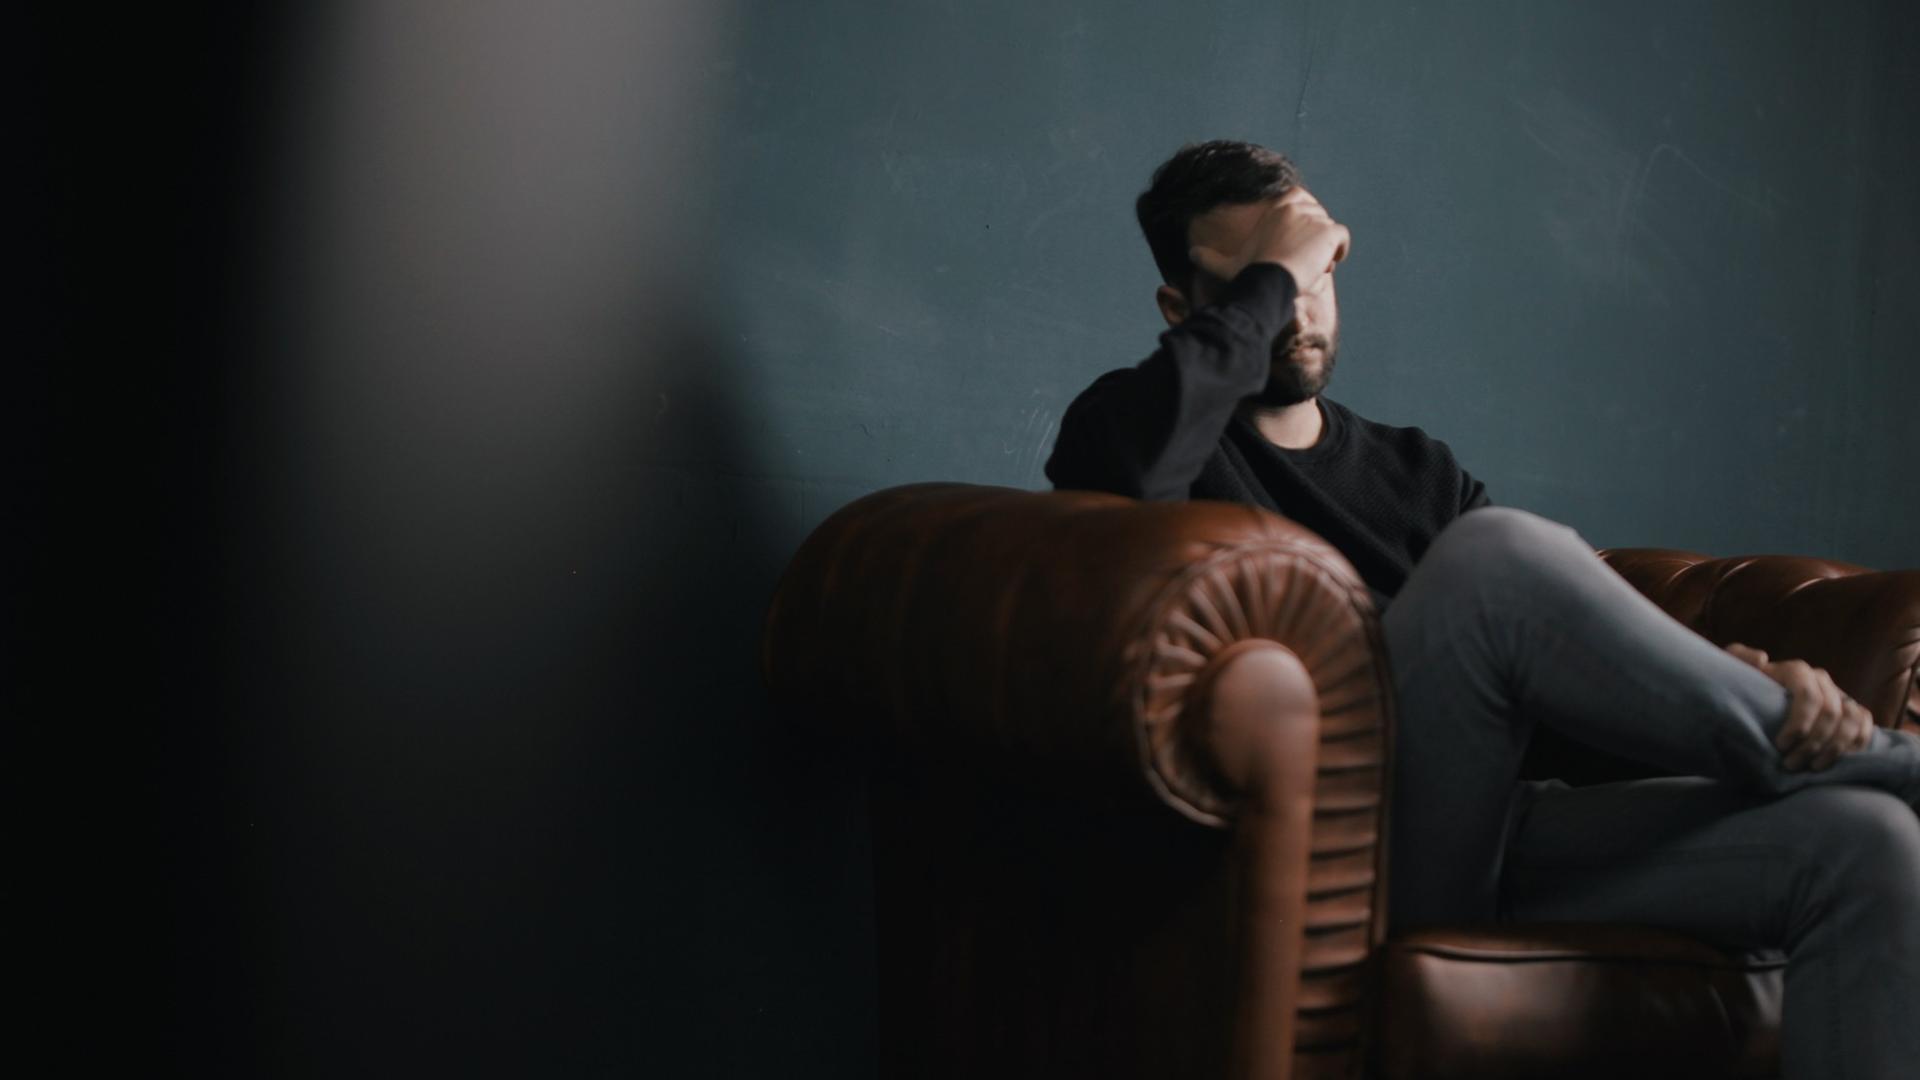  Ein Mann sitzt traurig auf einem Sofa und hält die Hand vor sein Gesicht.